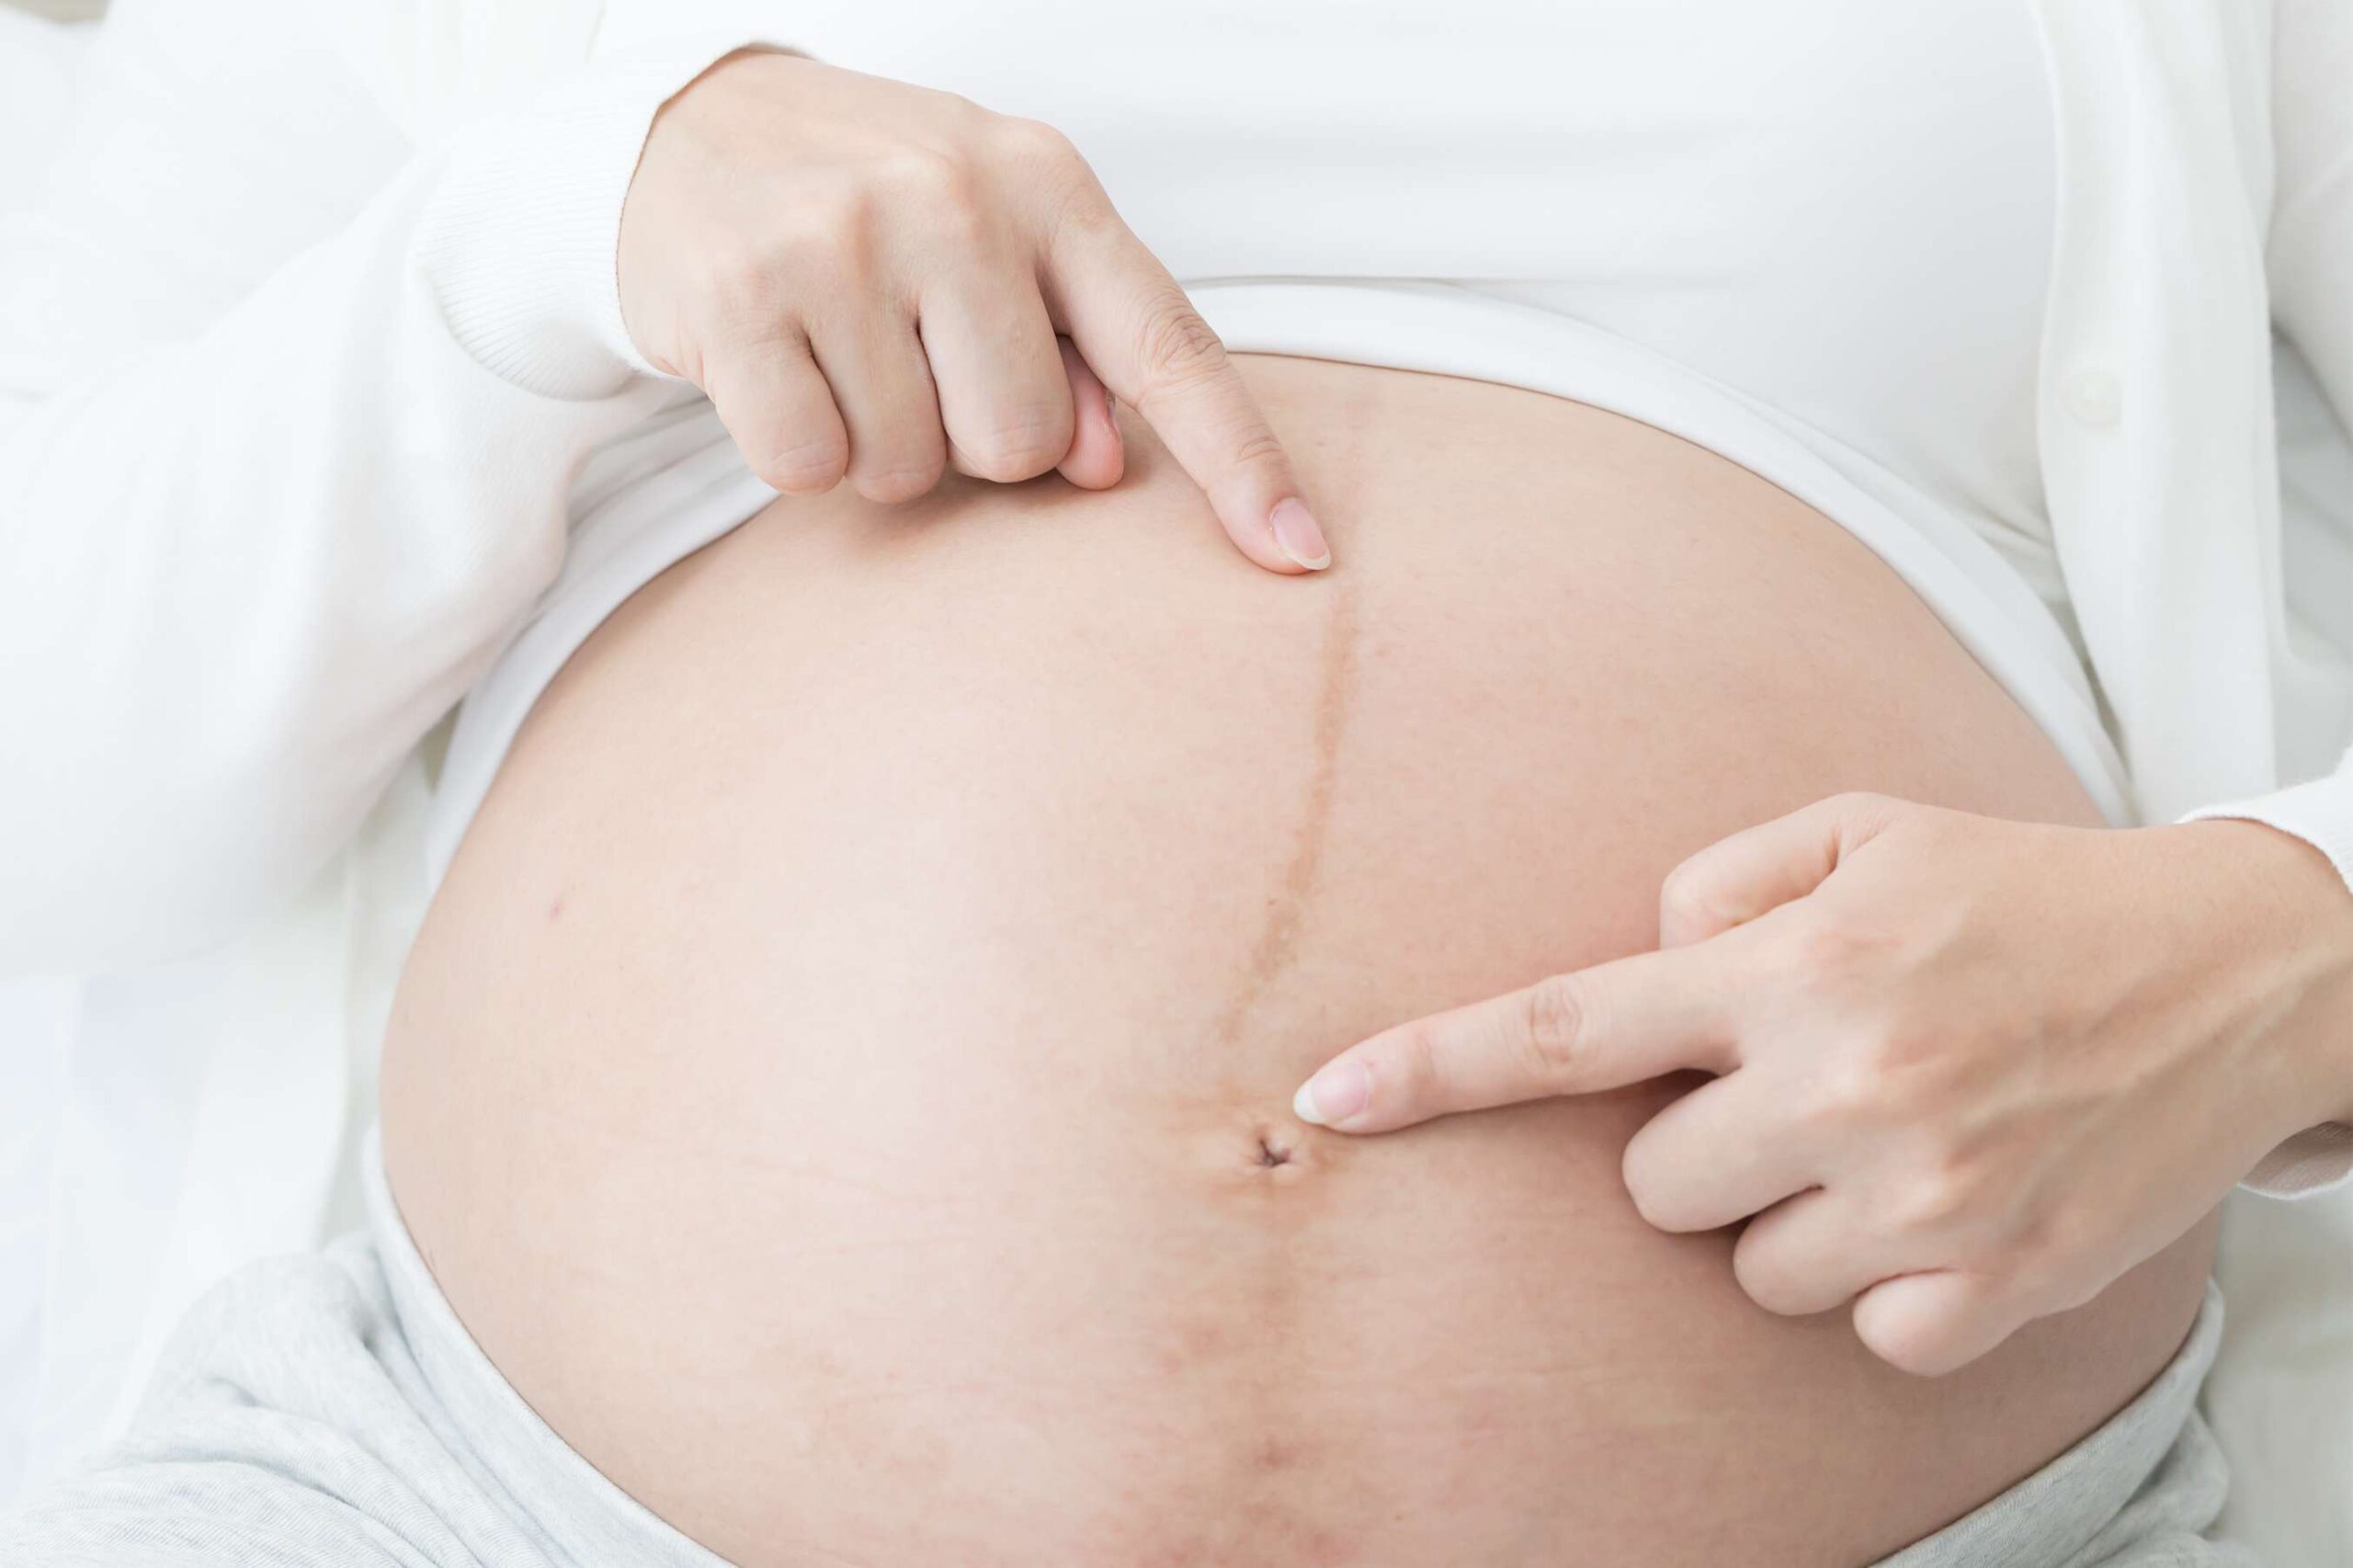 كيف اعرف نوع الجنين من شكل السره دليل المرأة الحامل